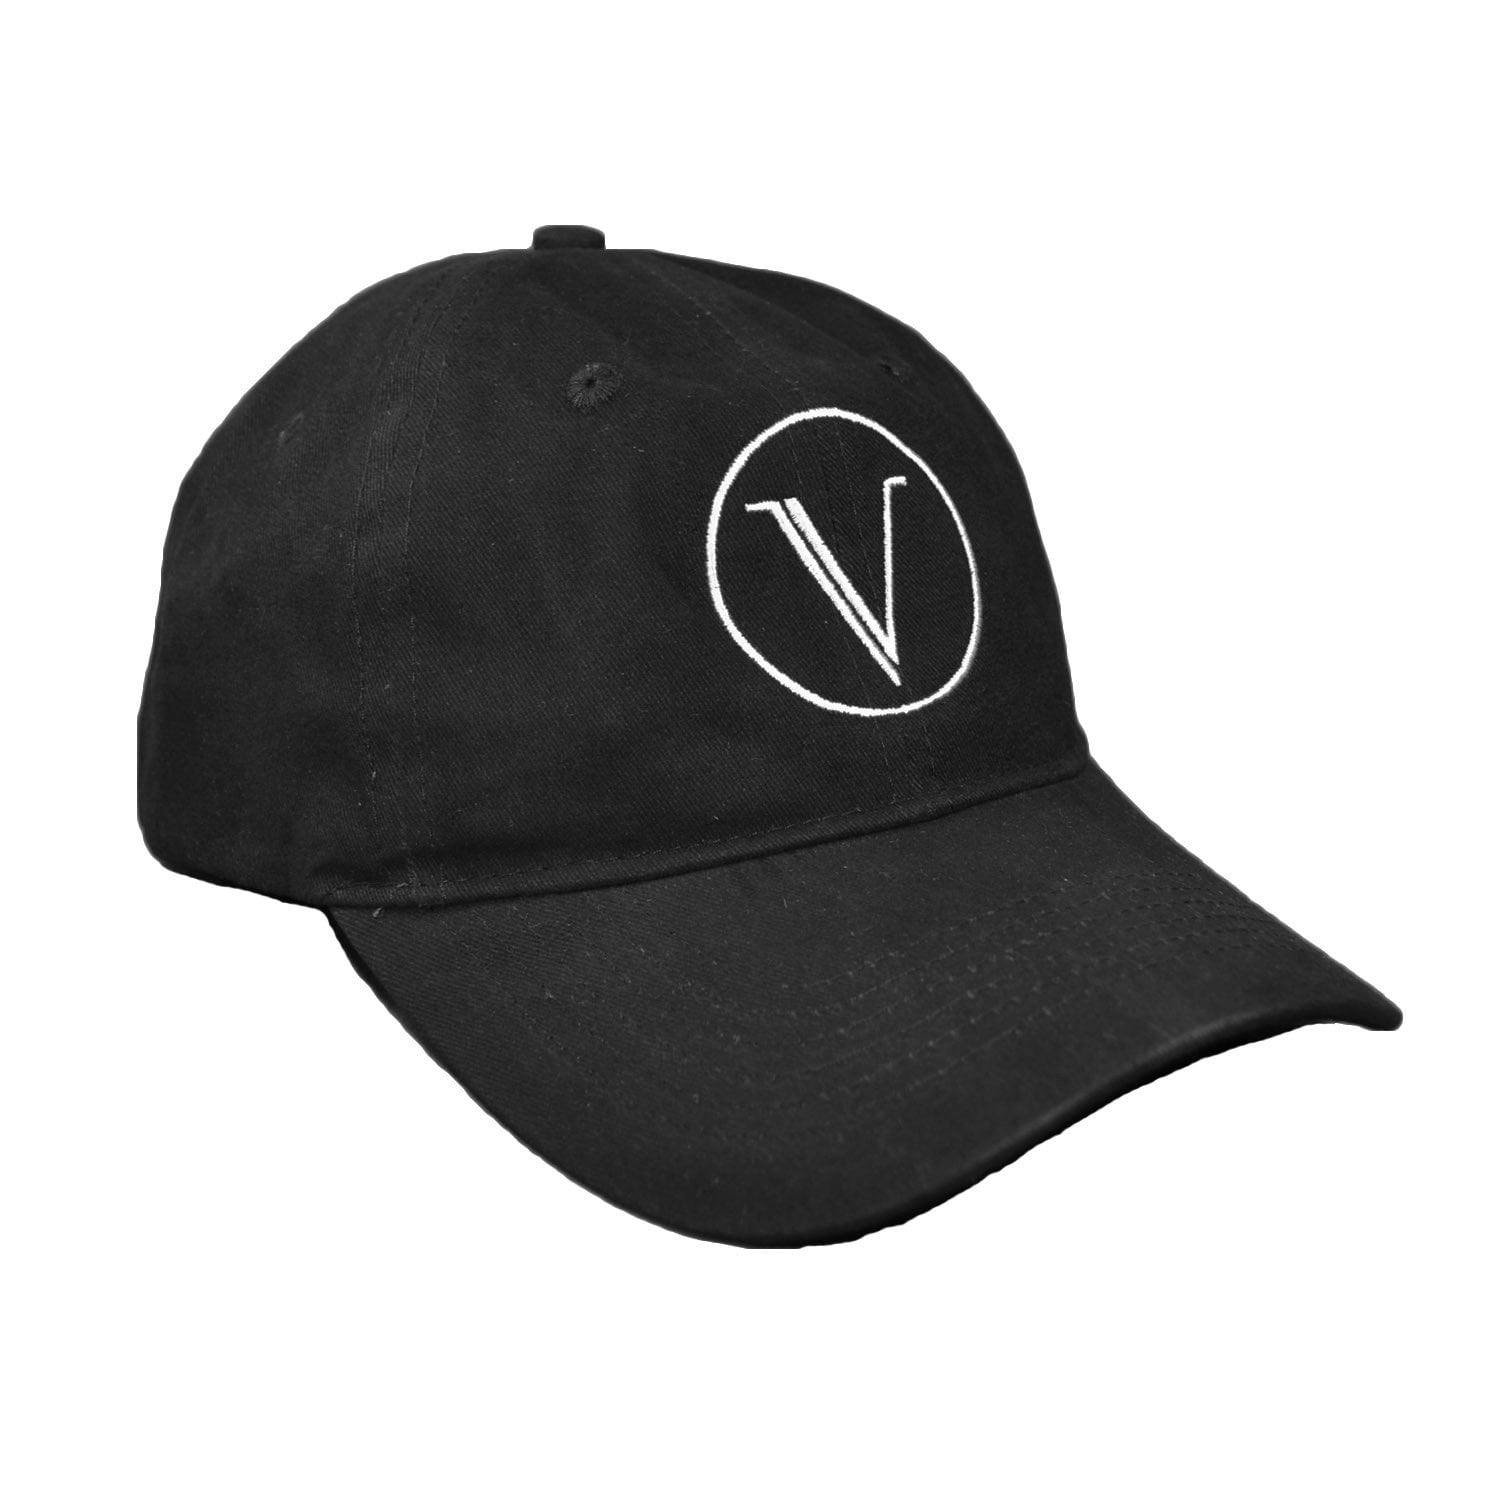 THE VAMPS CAP